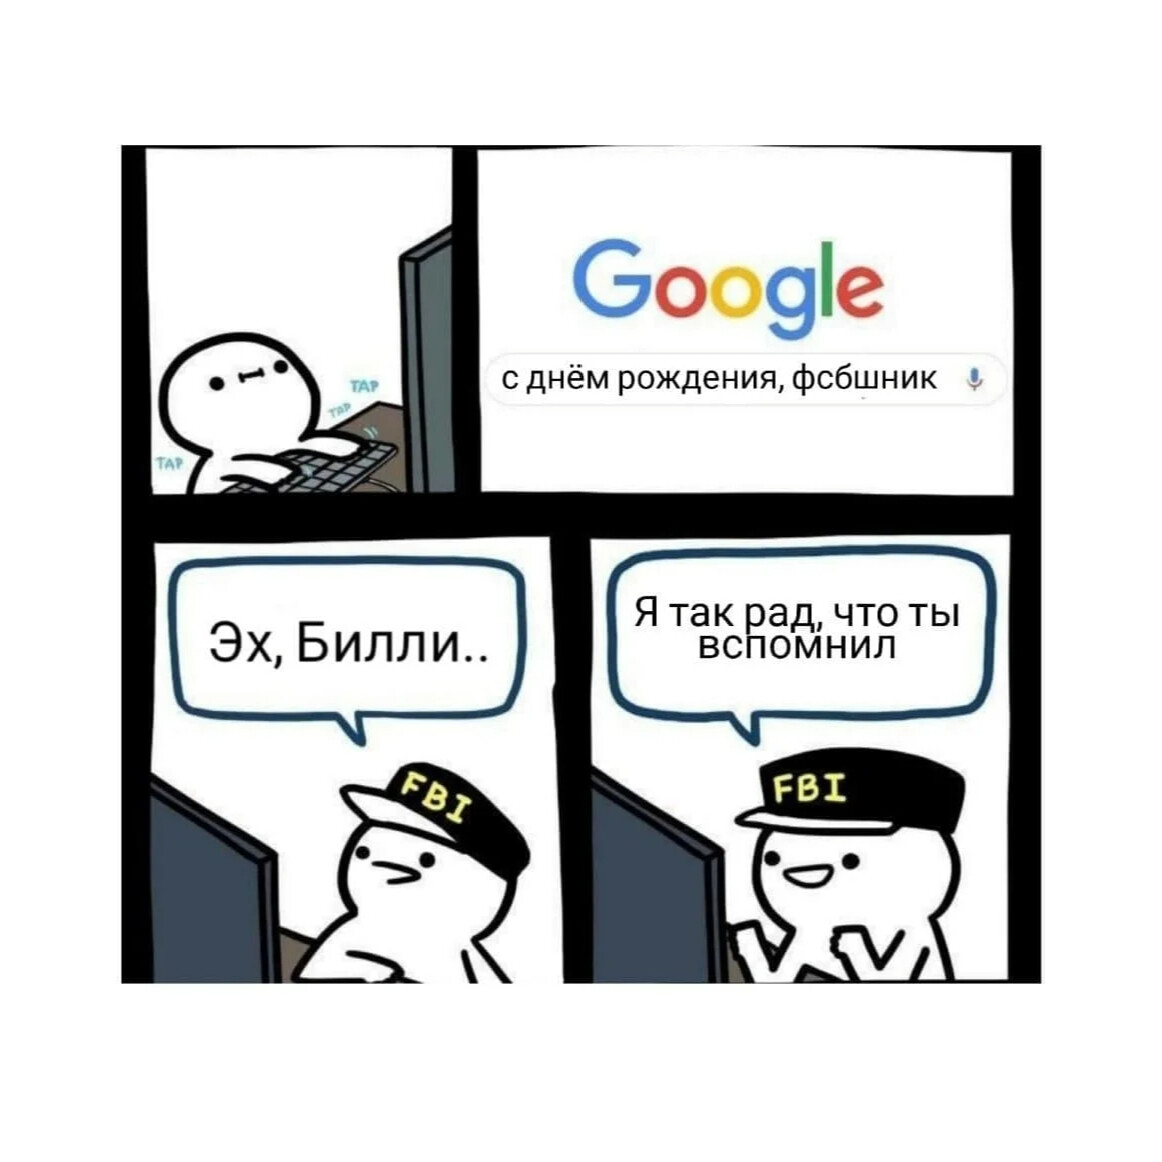 Мемы про ФСБ